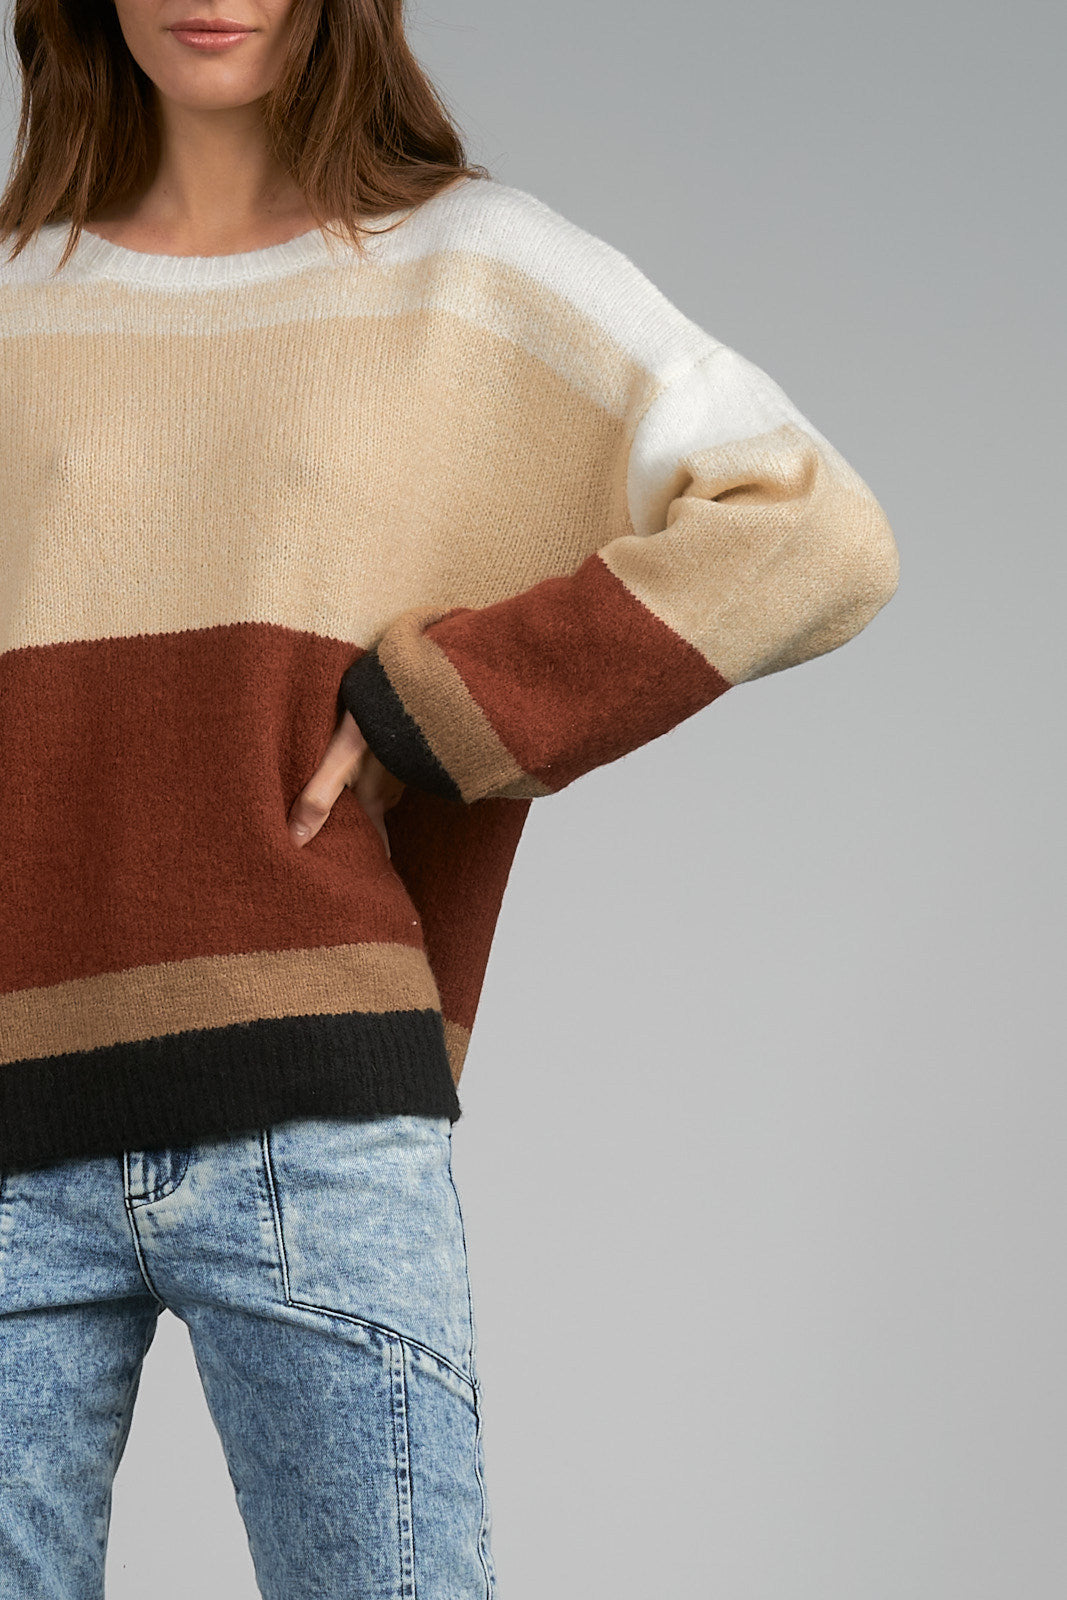 Swiss Sweater, Copper Stripe